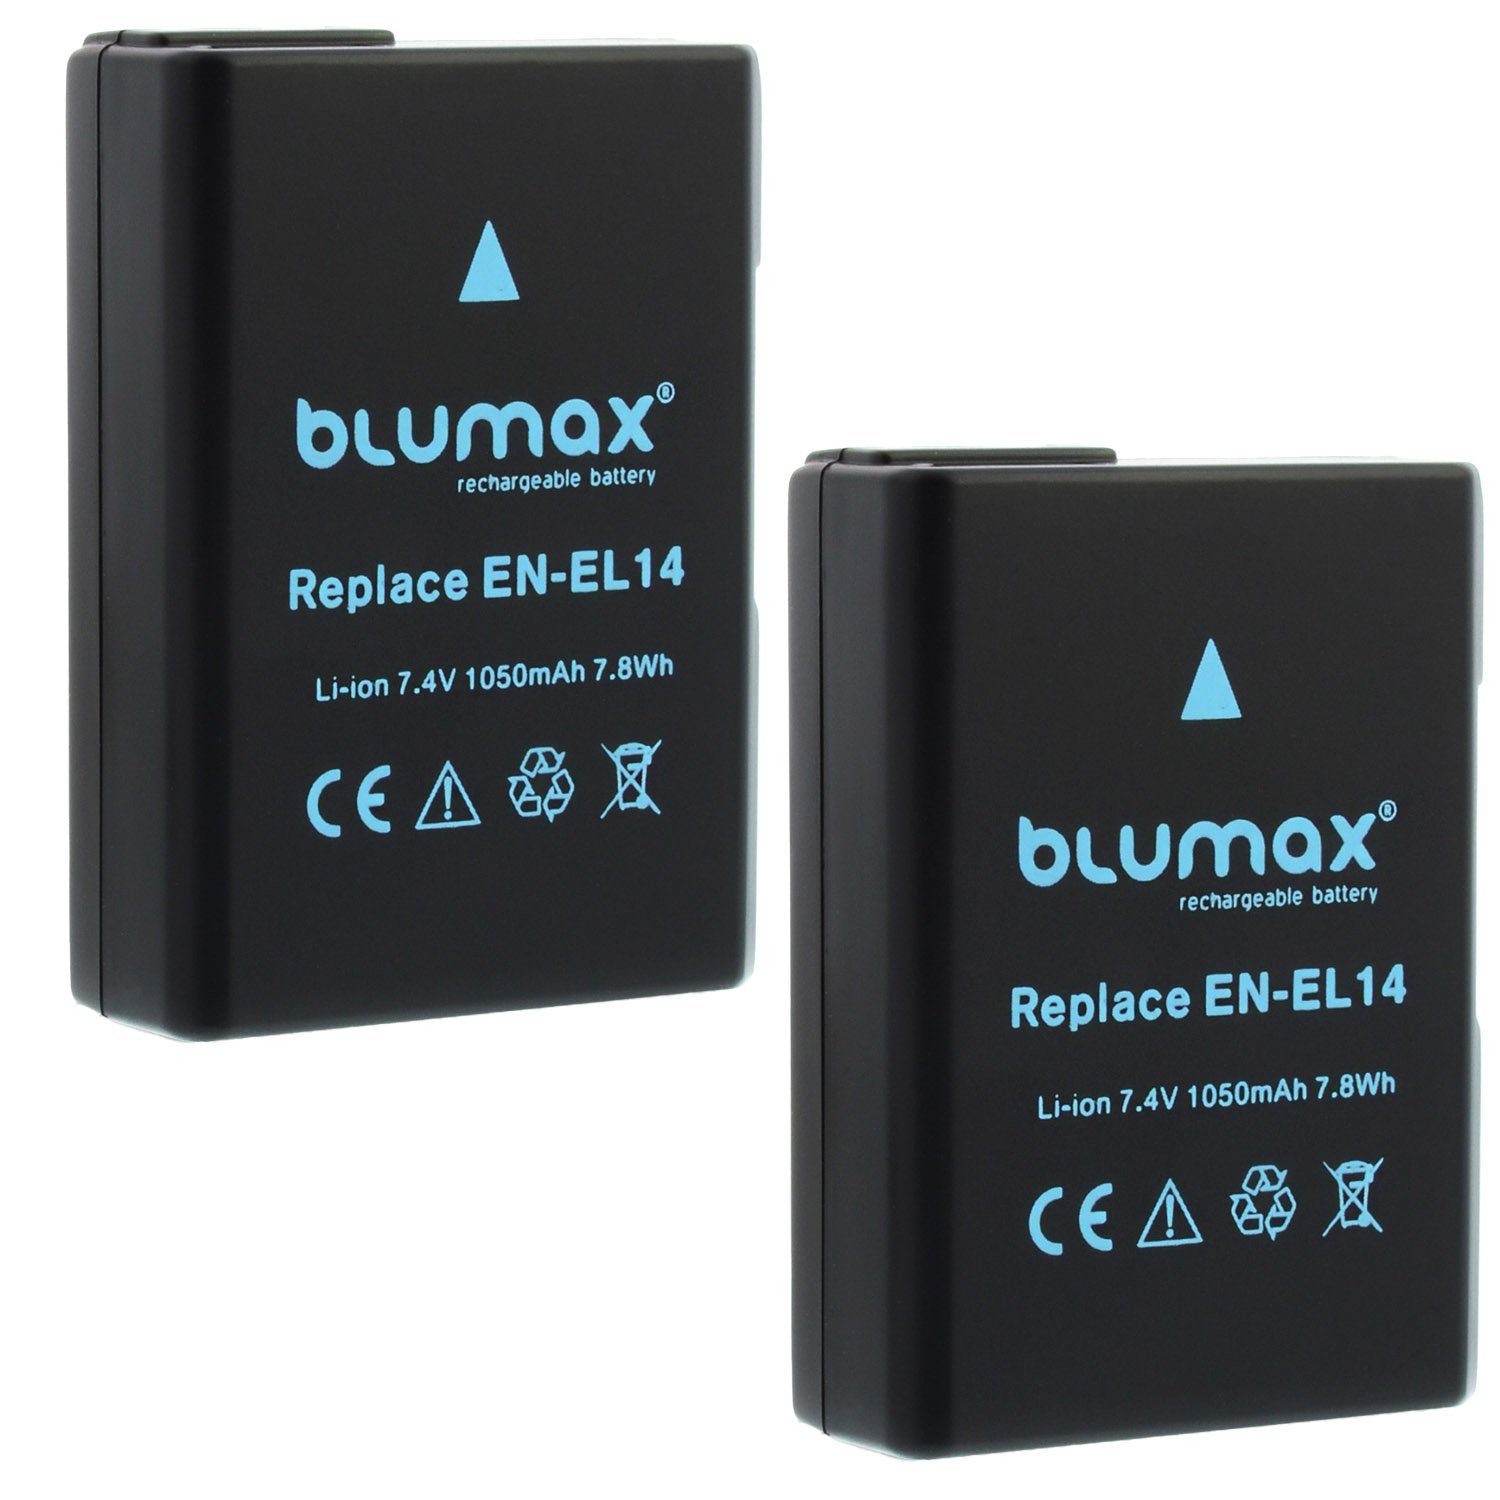 Blumax 2x EN-EL14 D3300 D5300 D5500 D5600 P7800 1050 mAh Kamera-Akku